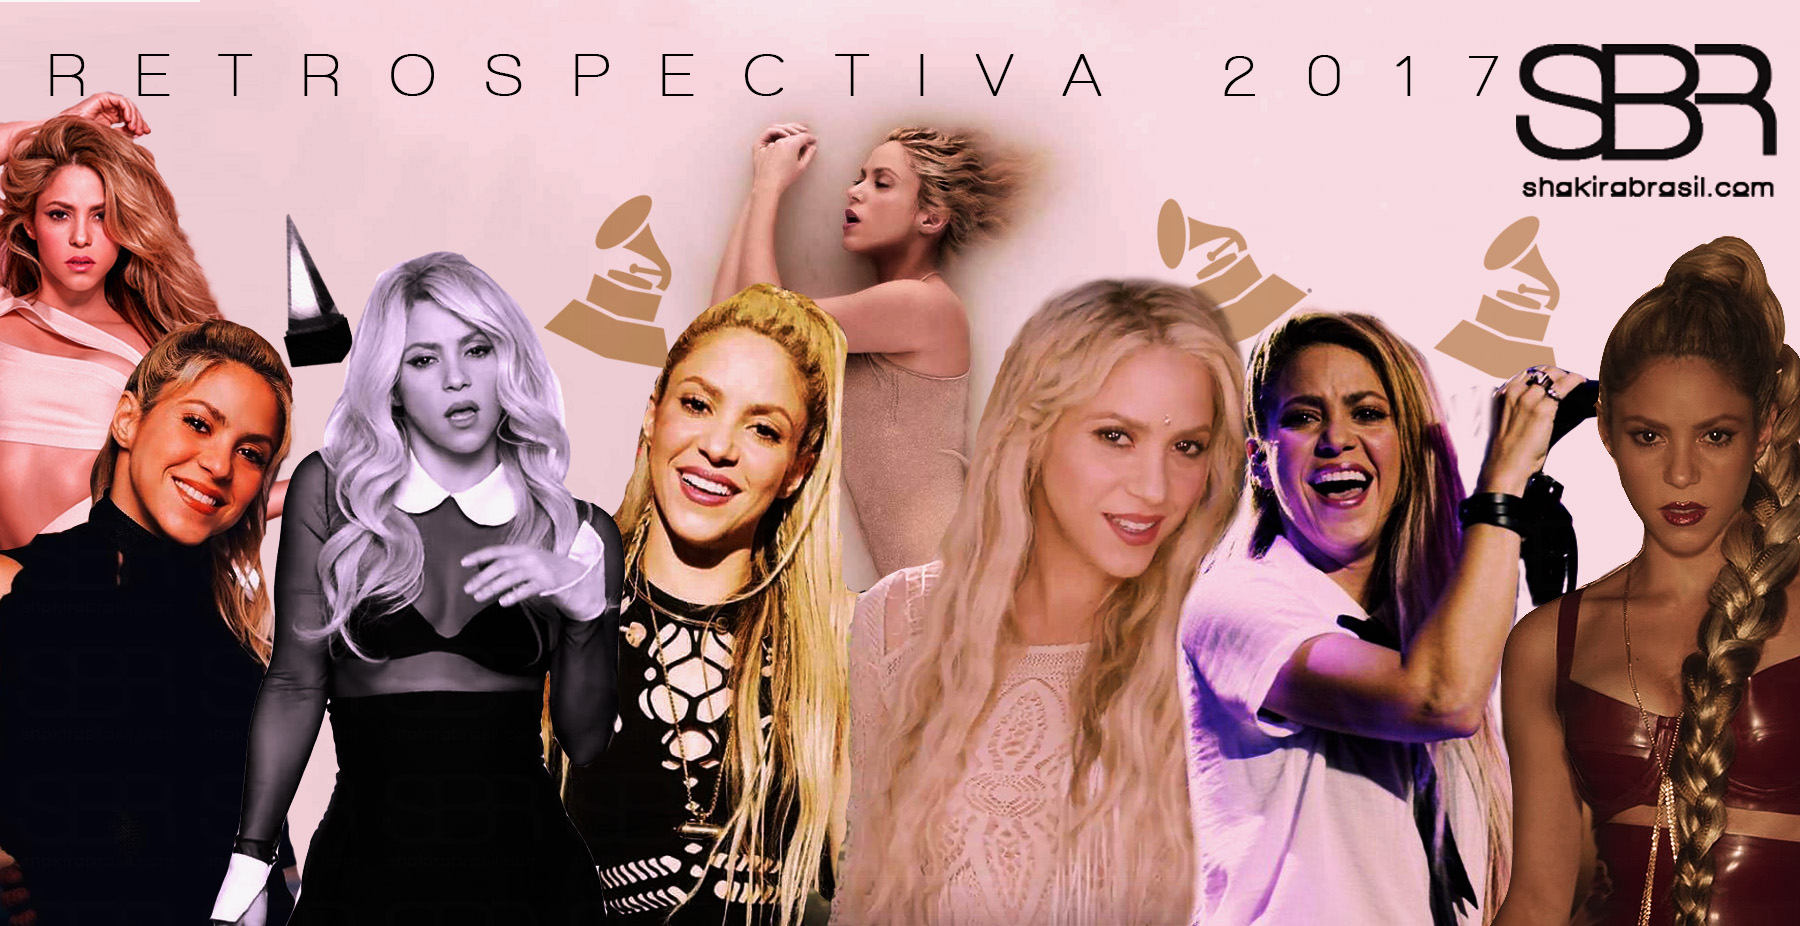 Retrospectiva 2017: Relembre os 25 momentos mais marcantes de Shakira